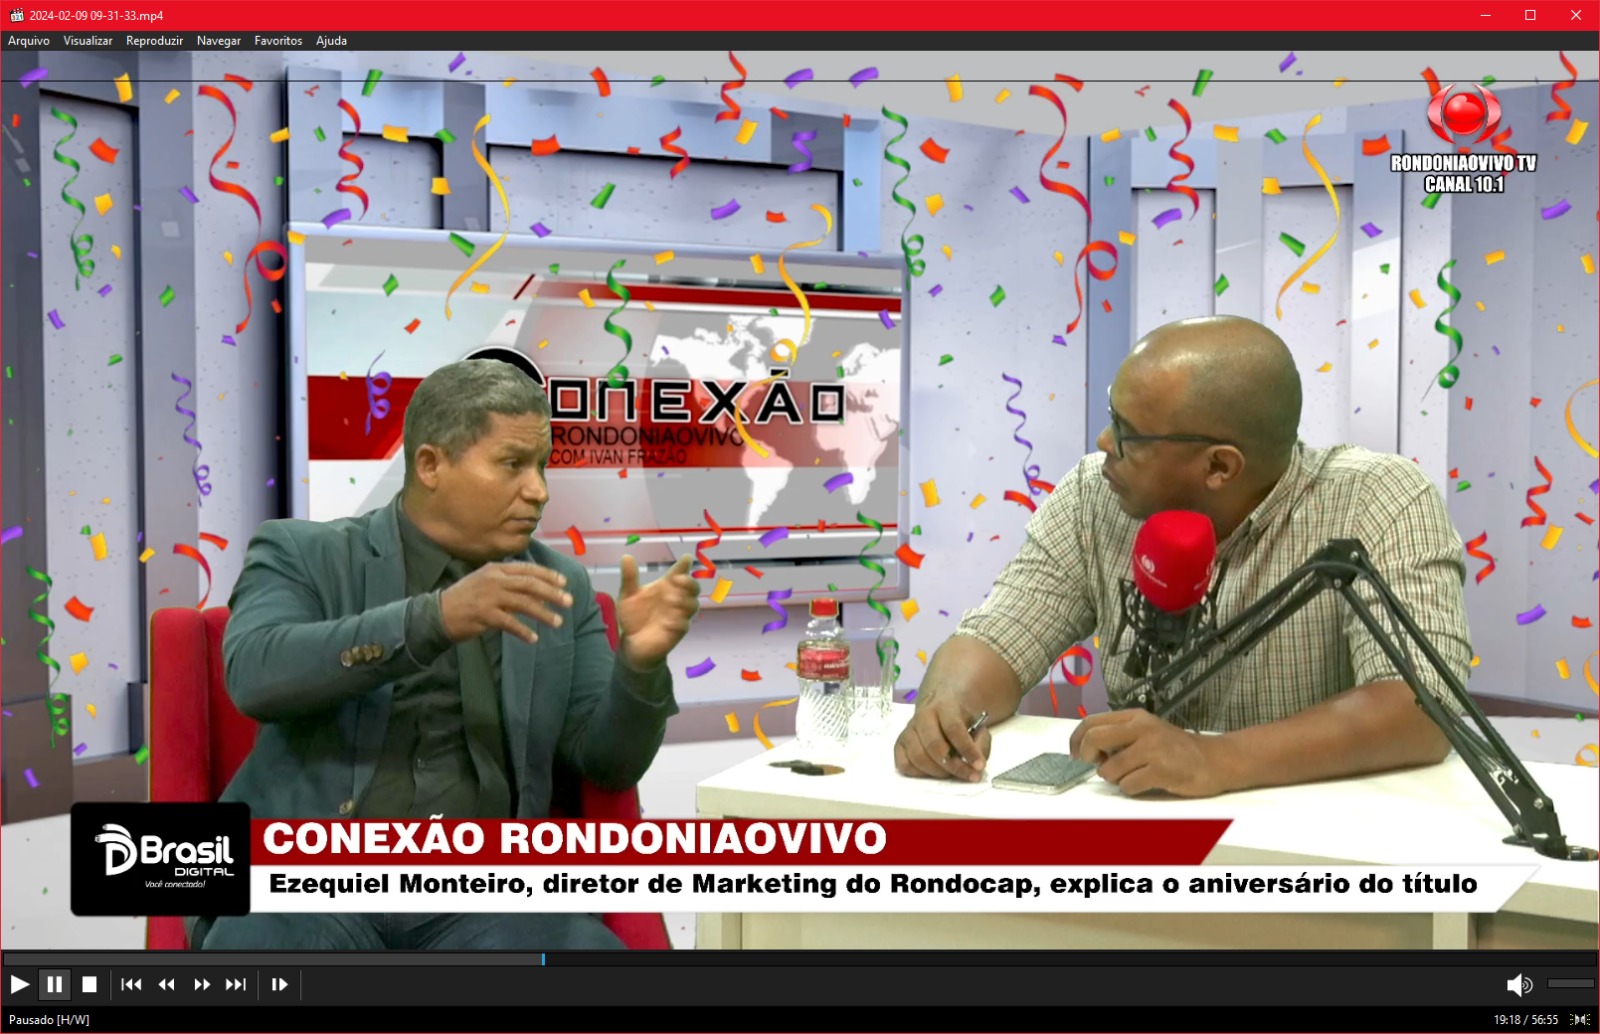 CONEXÃO RONDONIAOVIVO:   Ezequiel Monteiro, gestor de Marketing do Rondocap, fala sobre sorteios